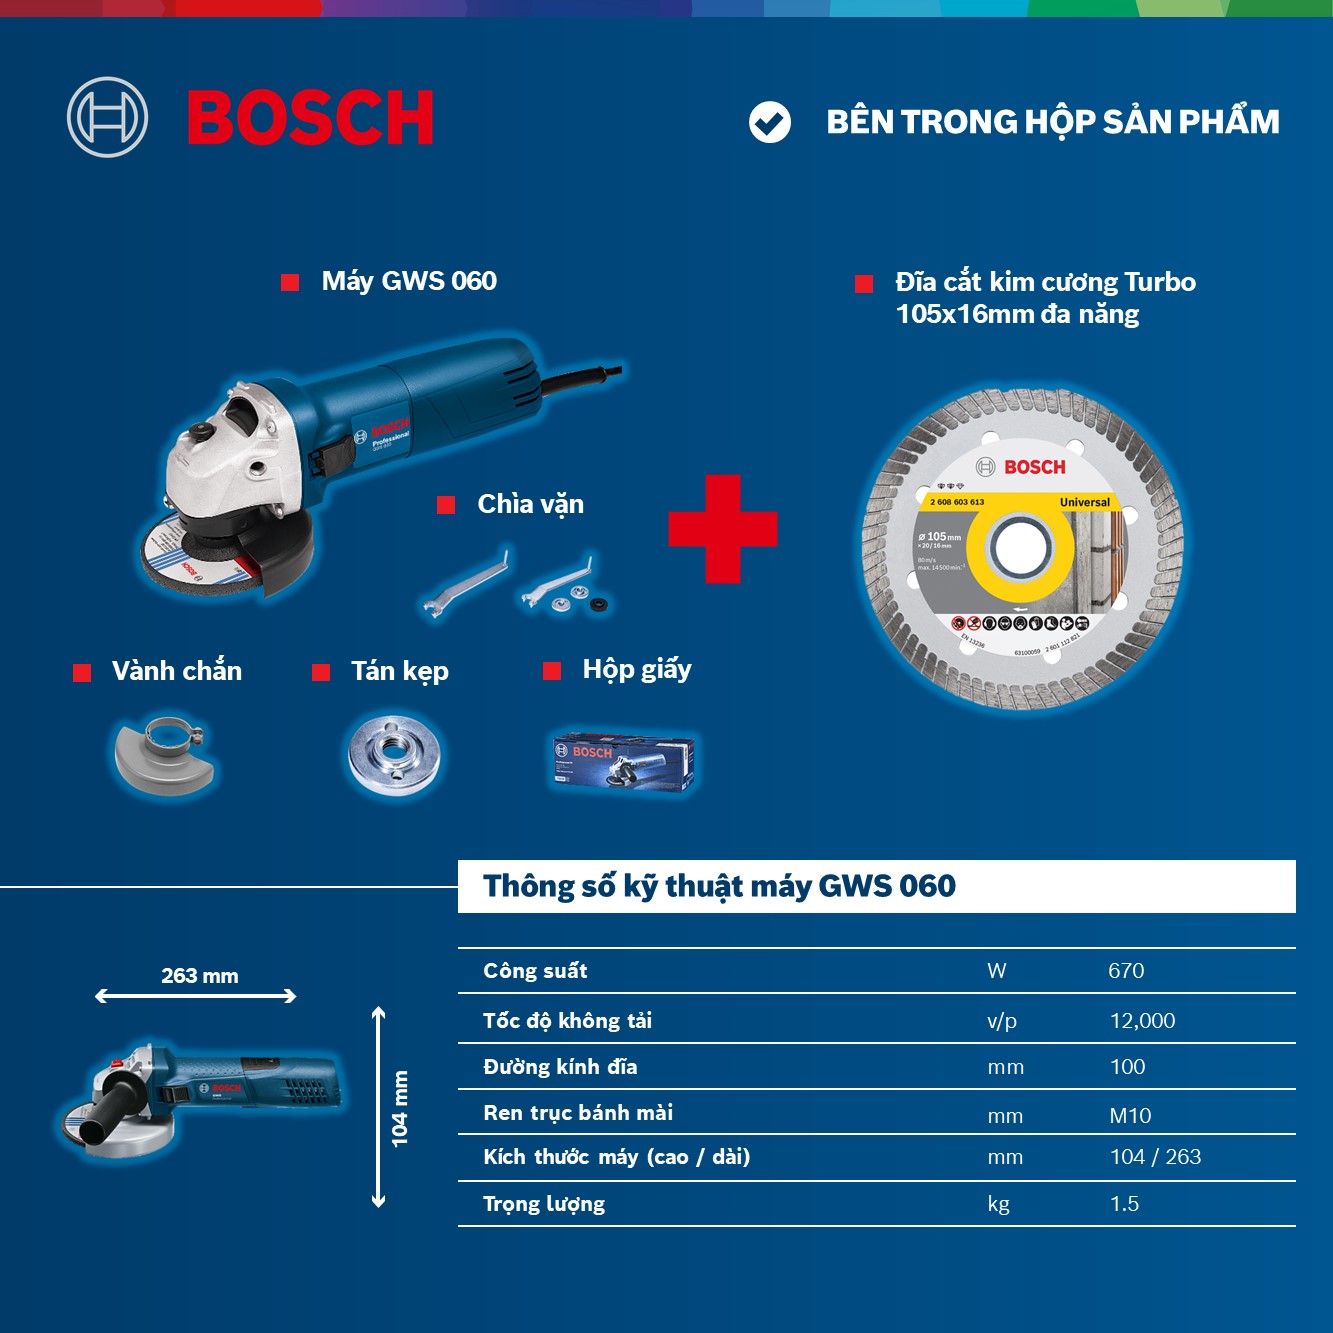 Combo Máy mài góc Bosch GWS 060 và Đĩa cắt kim cương Turbo 105x16mm đa năng